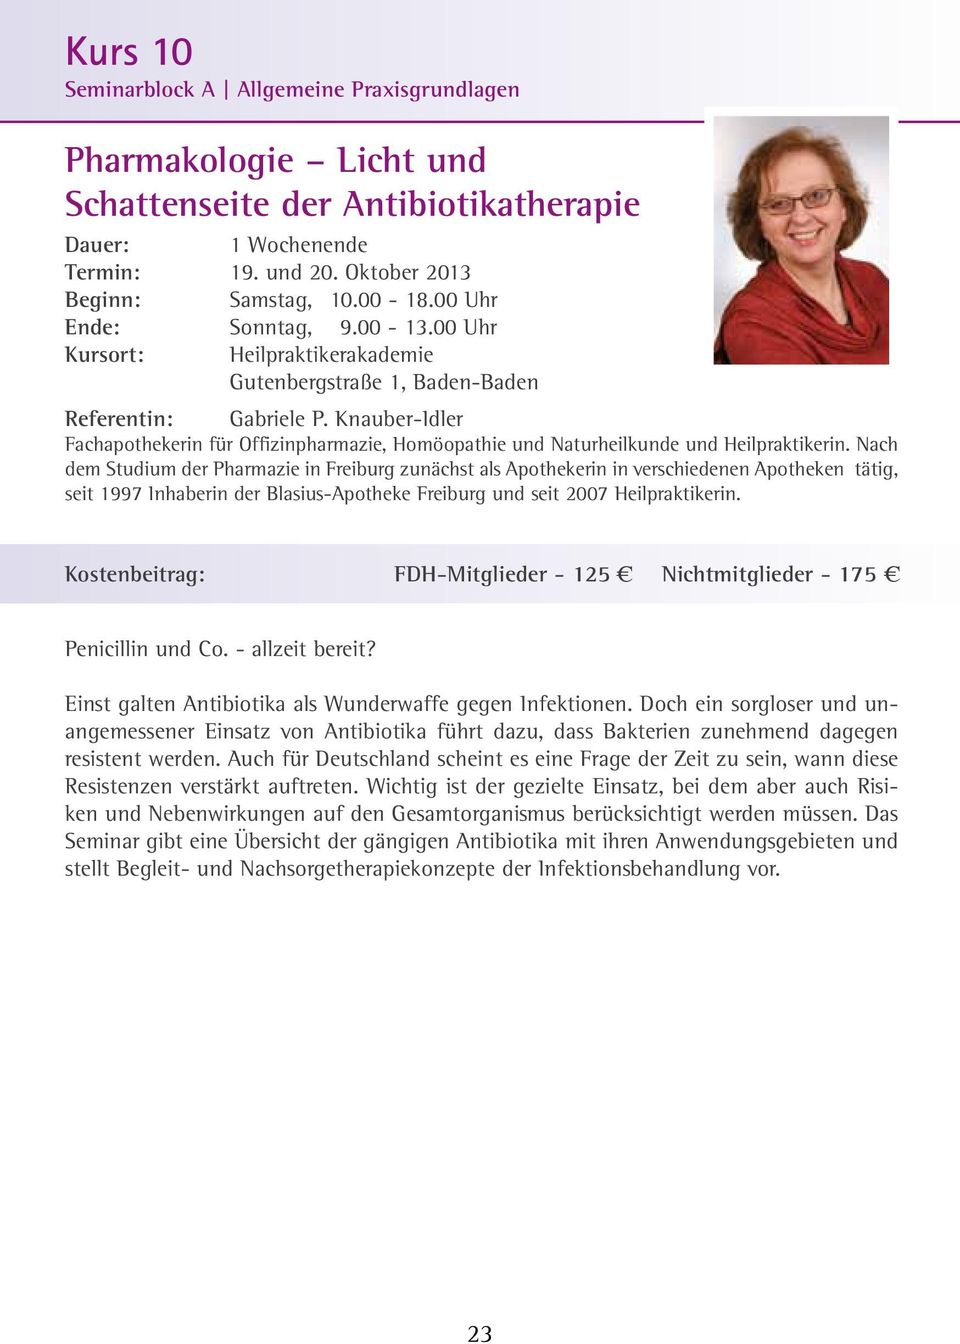 Nach dem Studium der Pharmazie in Freiburg zunächst als Apothekerin in verschiedenen Apotheken tätig, seit 1997 Inhaberin der Blasius-Apotheke Freiburg und seit 2007 Heilpraktikerin.